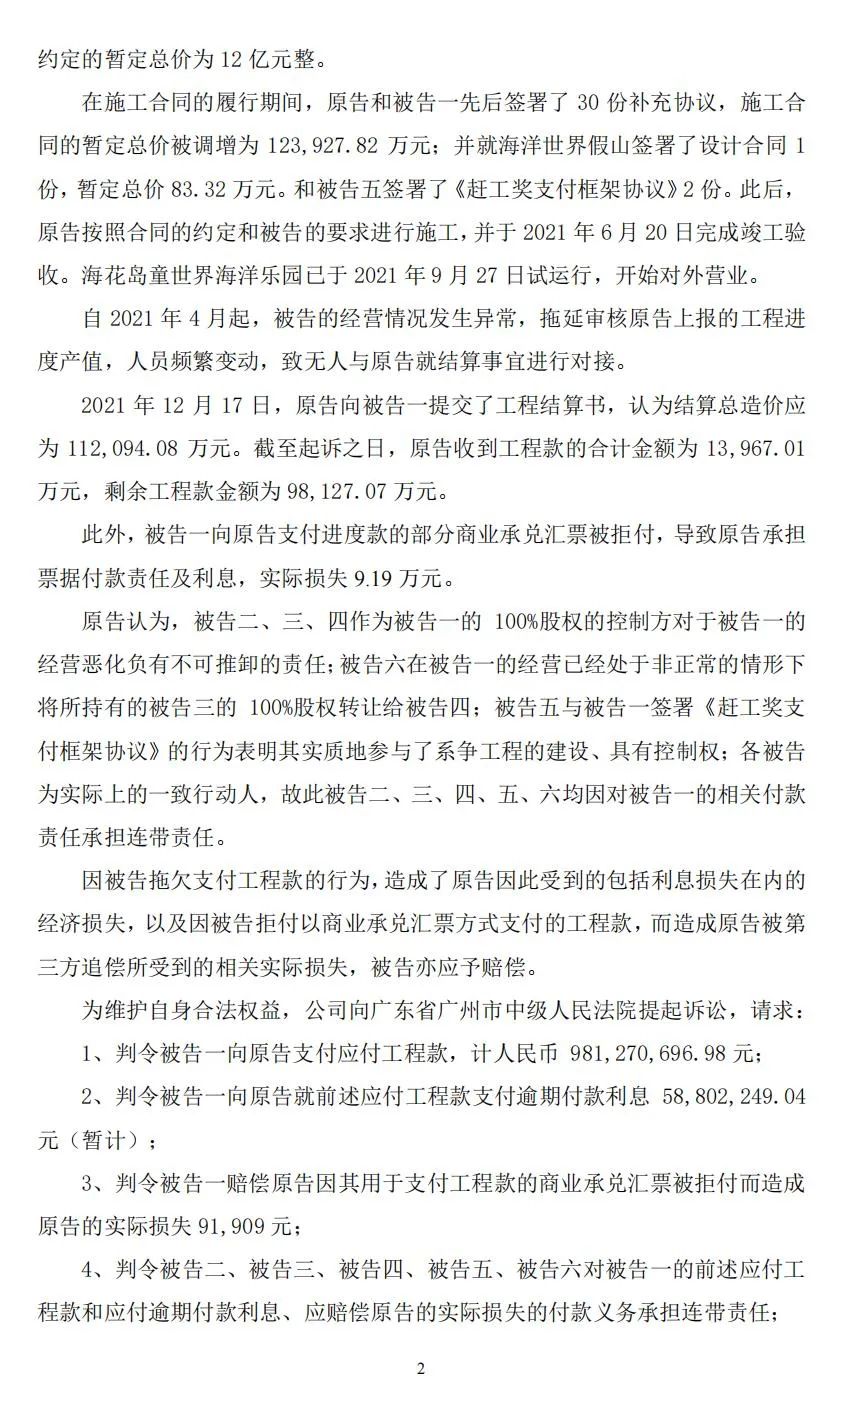 上海建工起诉恒大集团插图(2)